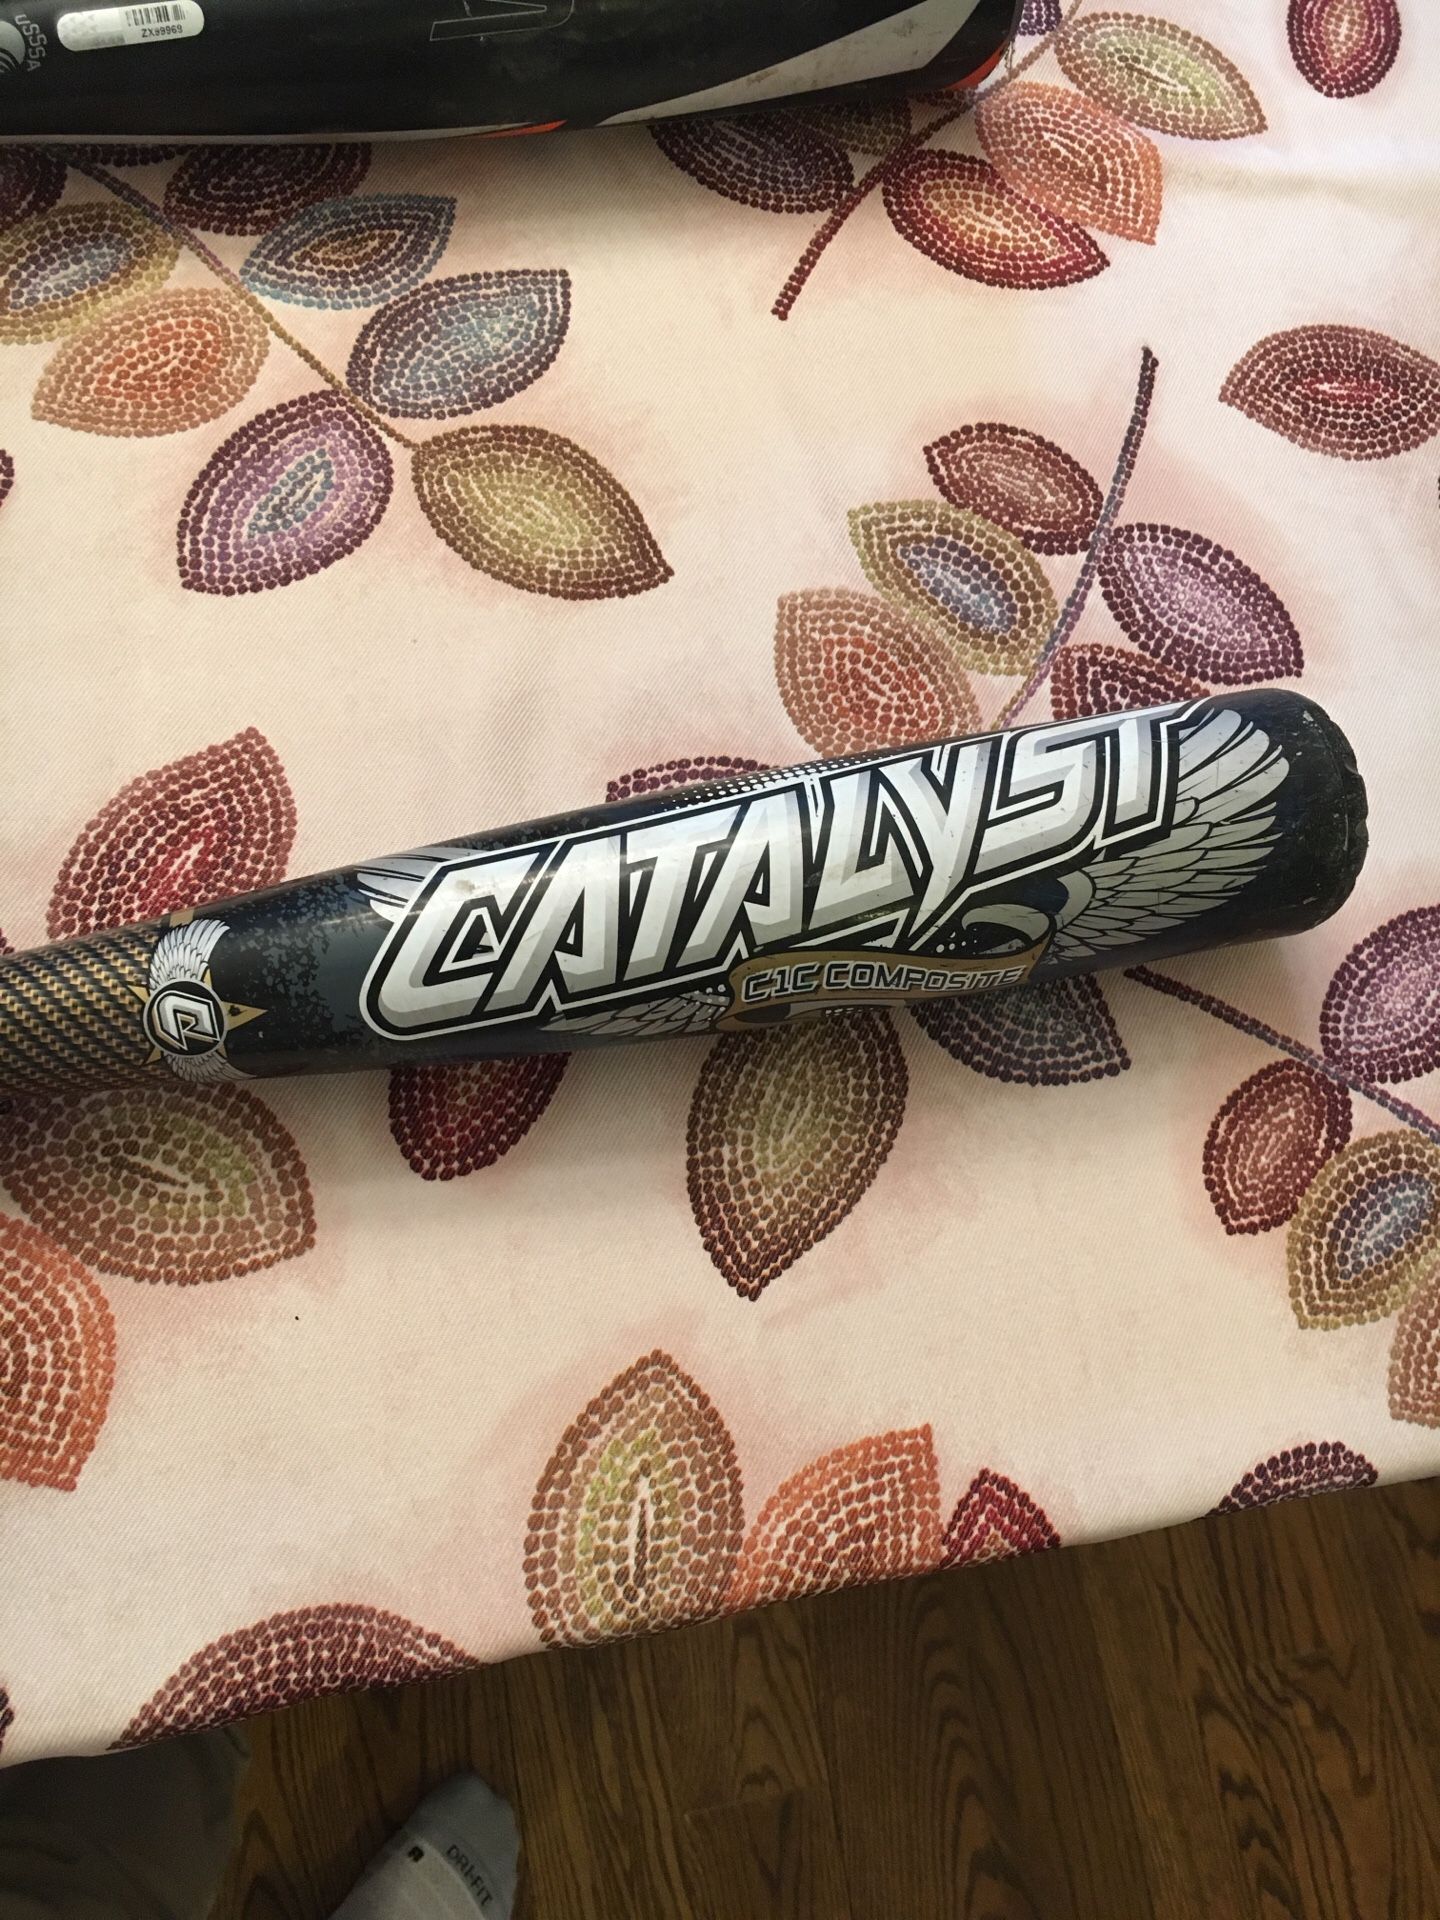 Catalyst C1C composite baseball bat